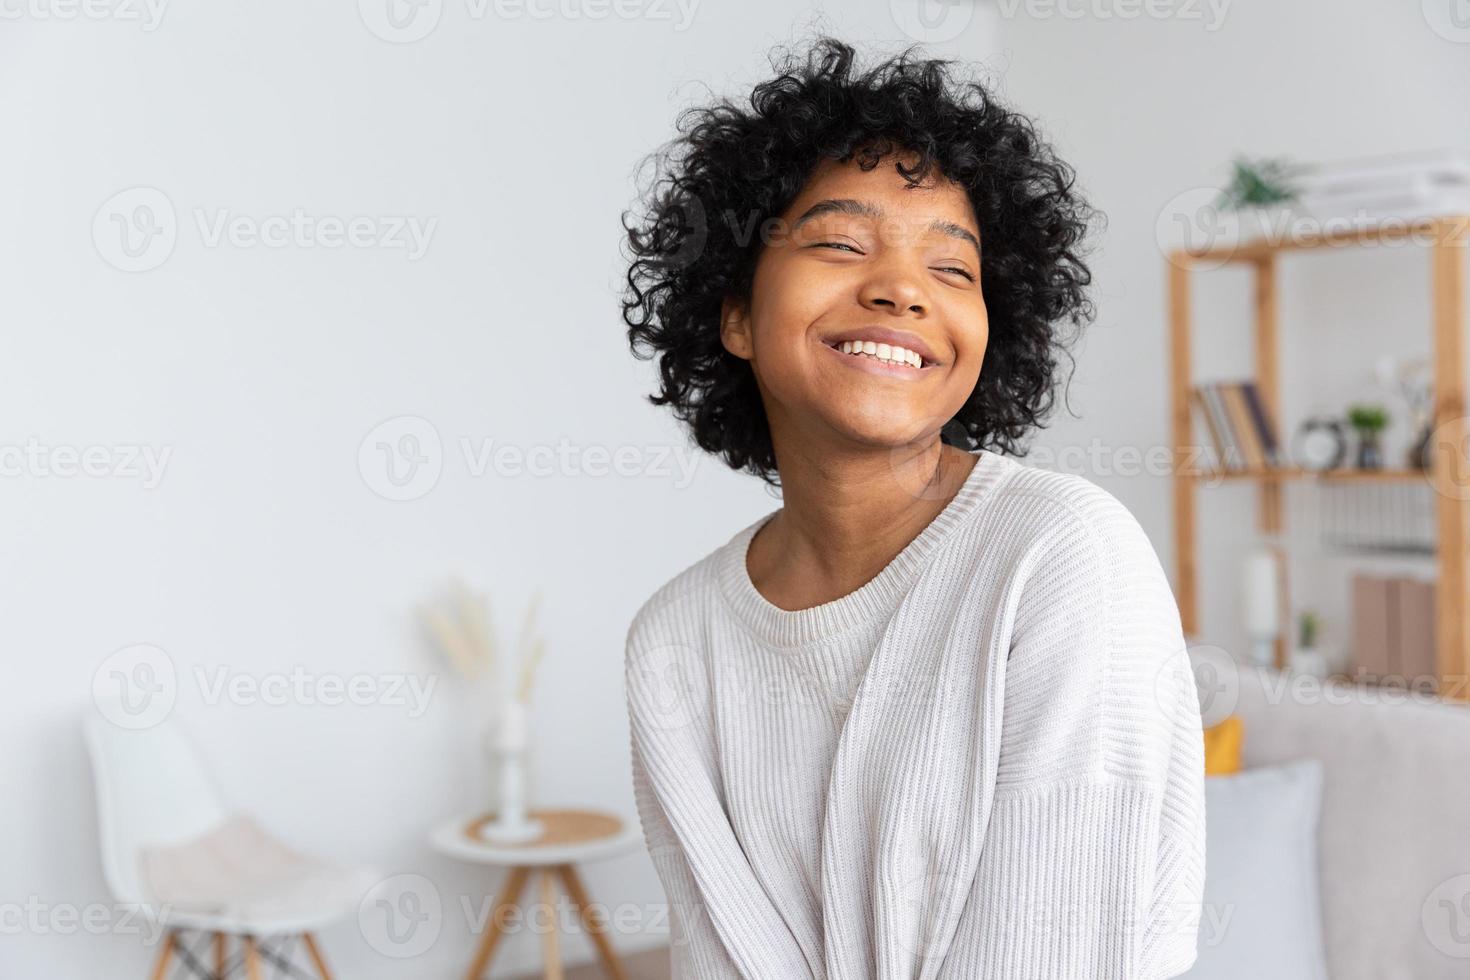 schönes afroamerikanisches mädchen mit afrofrisur, das zu hause drinnen lächelt. junge afrikanische frau mit lockigem haar, die im wohnzimmer lacht. freiheit glück sorglos glückliche menschen konzept. foto